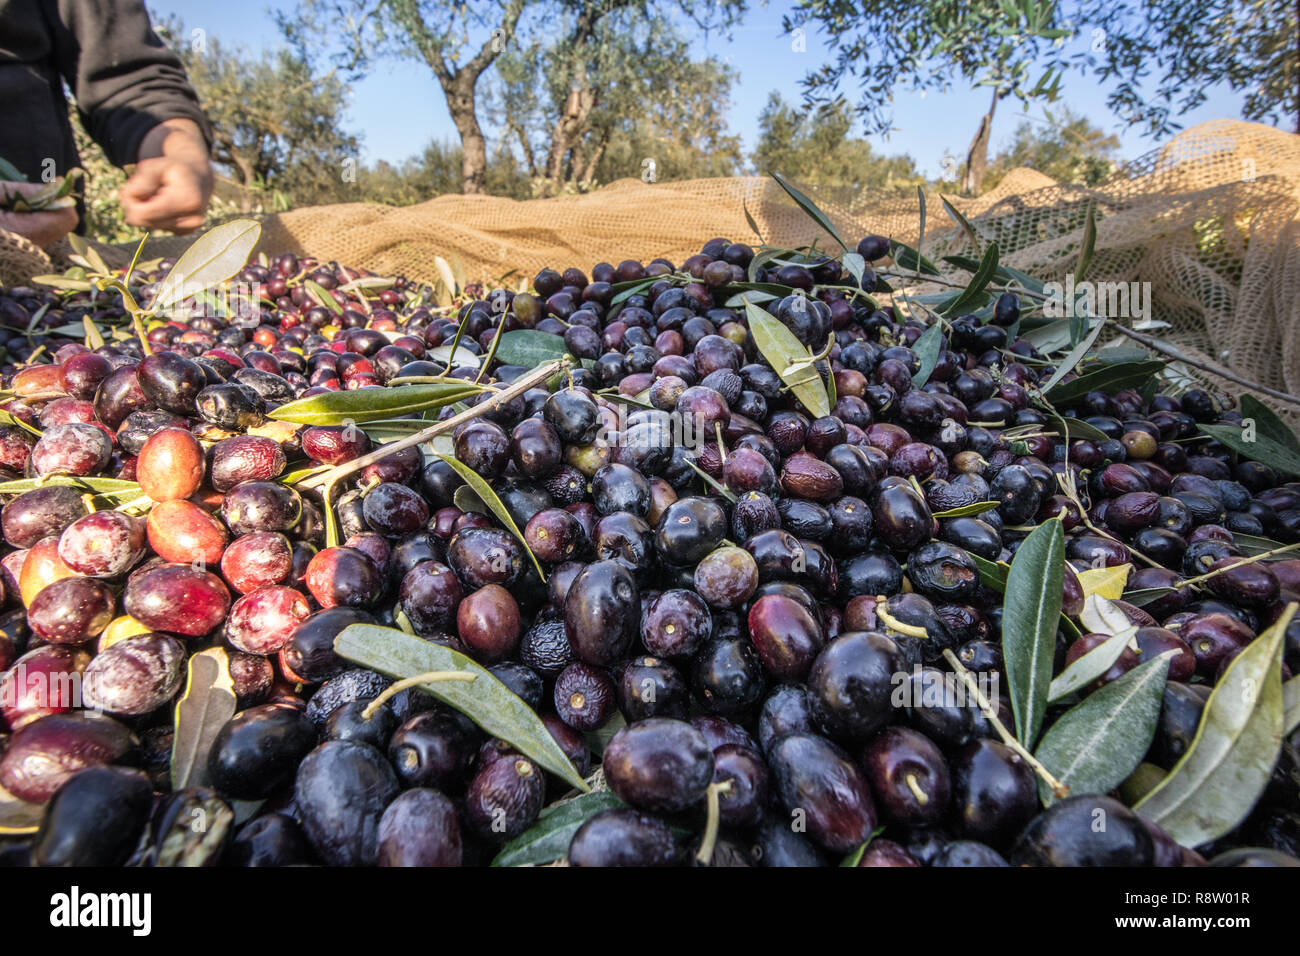 Close up of olives cueillies à partir de la récolte avec des personnes travaillant en Italie Banque D'Images